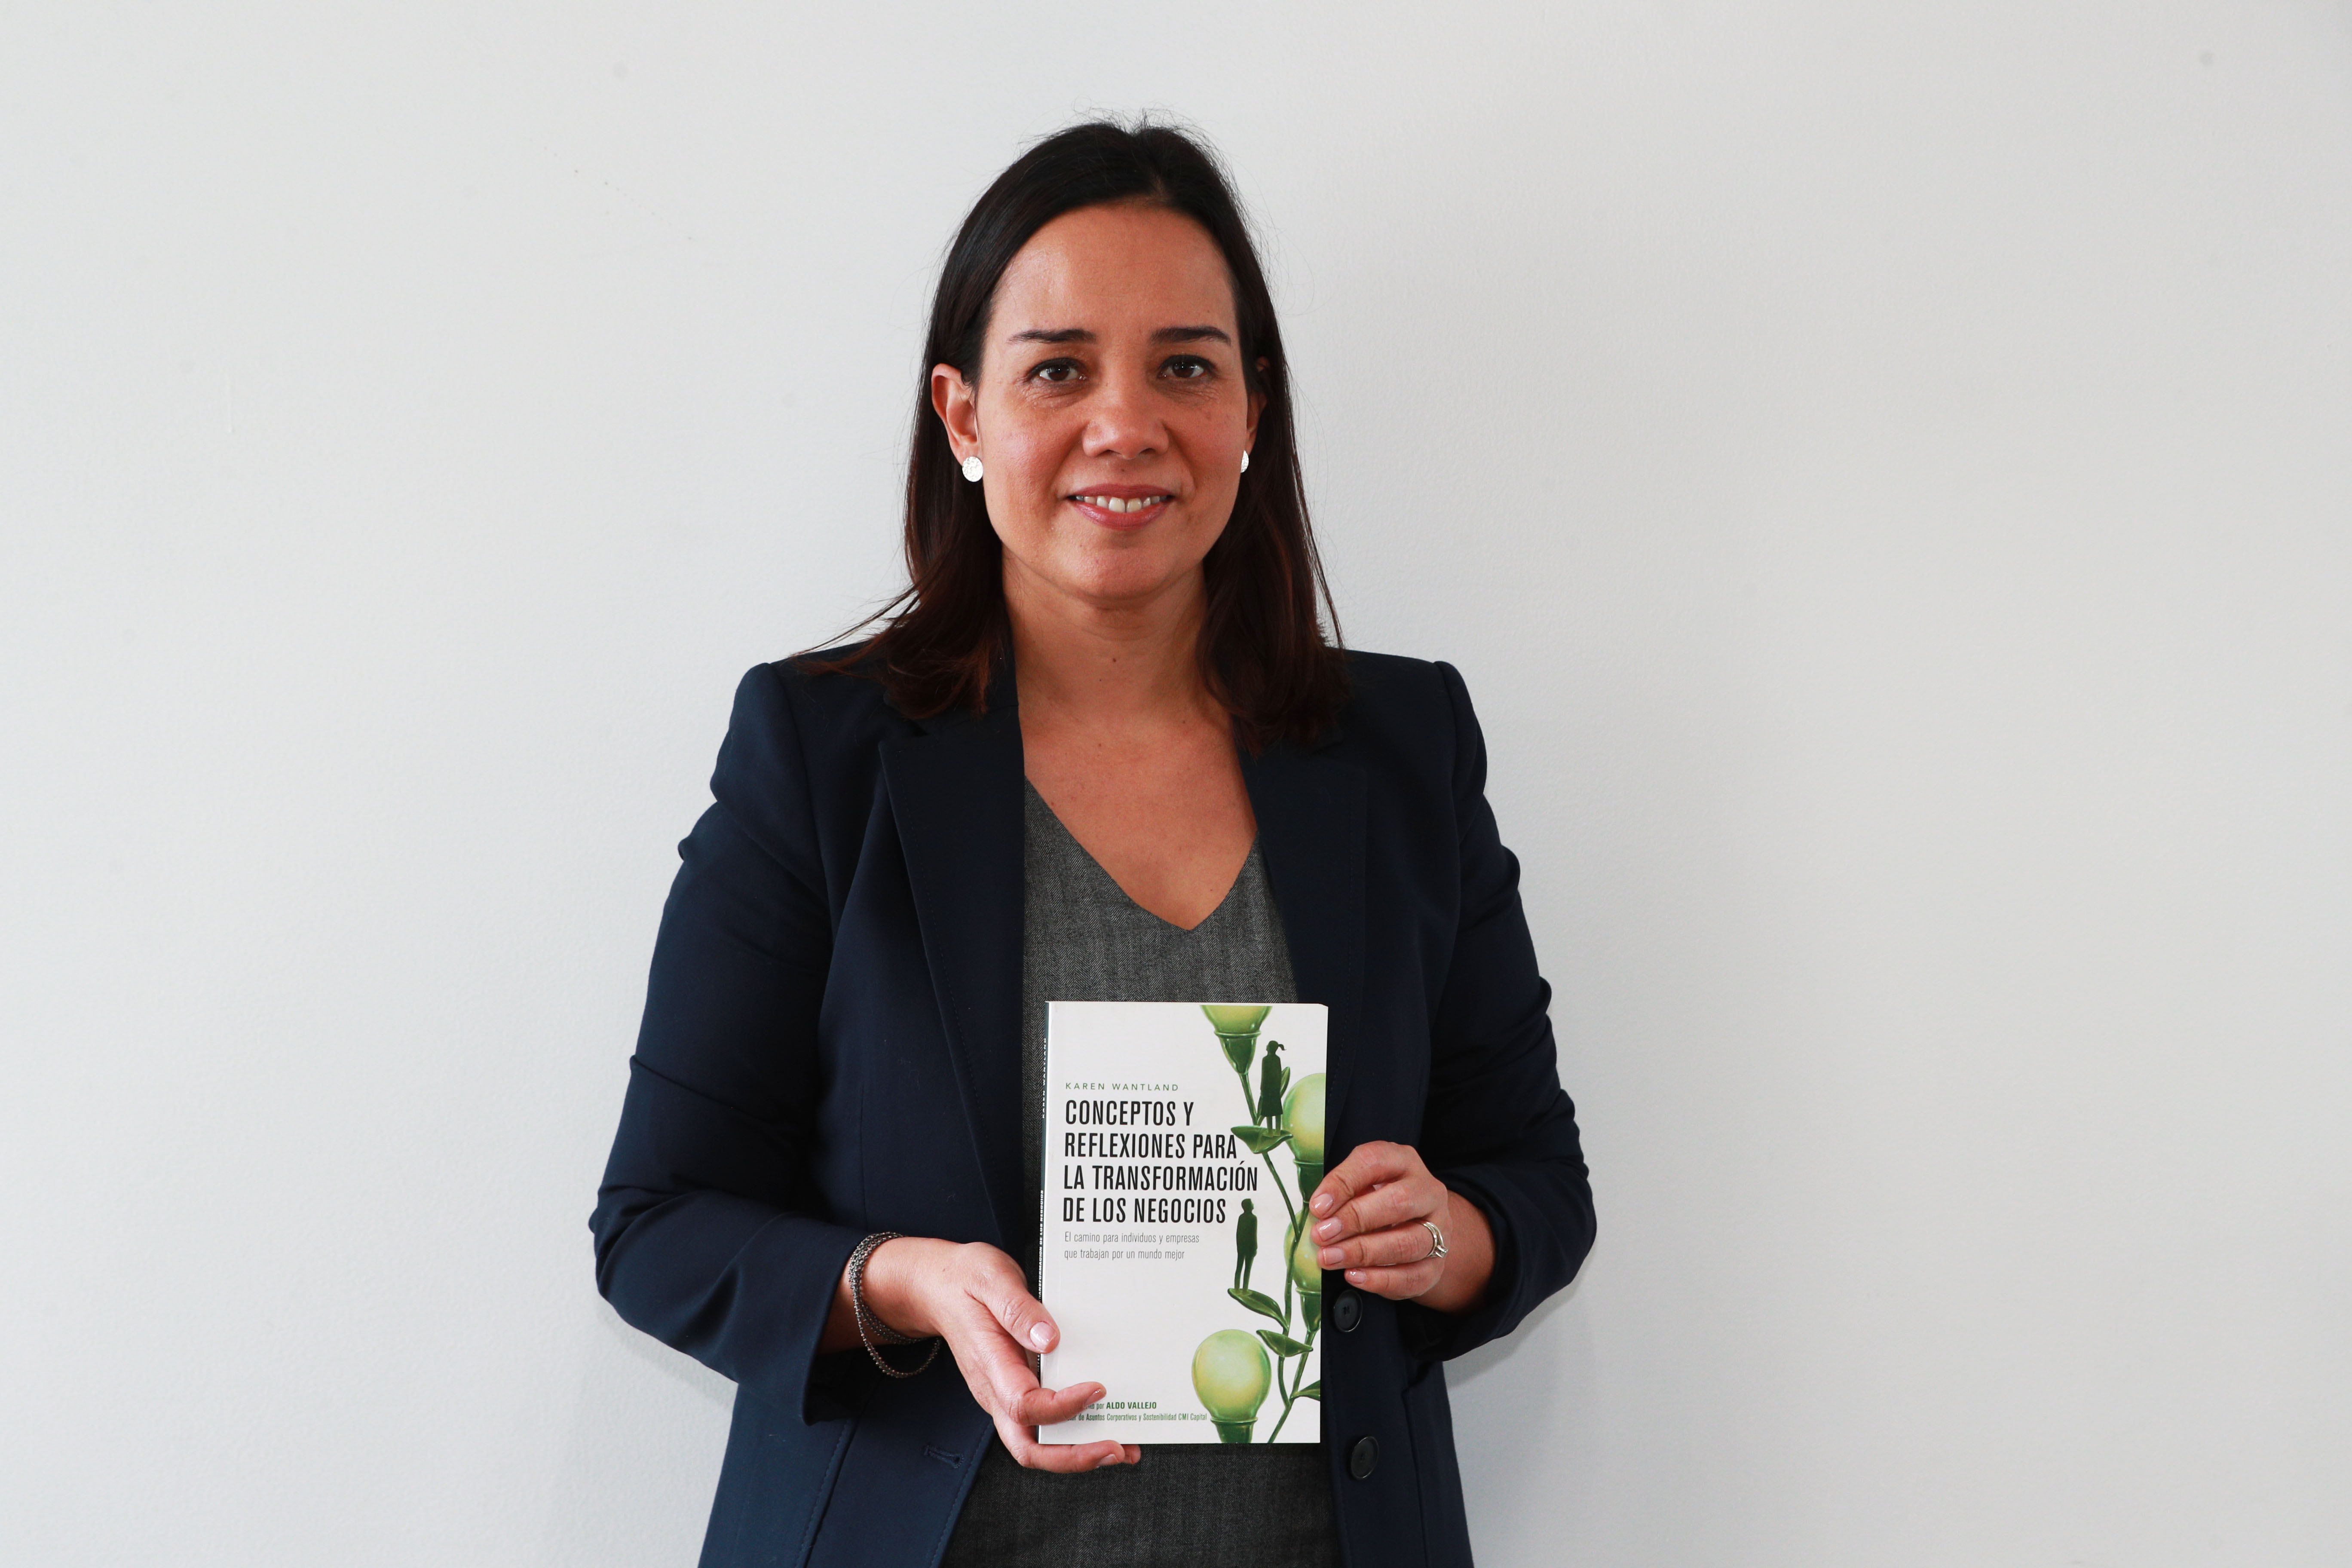 Karen Wantland: “Con este libro se pueden hacer cambios que beneficien el desarrollo sostenible”